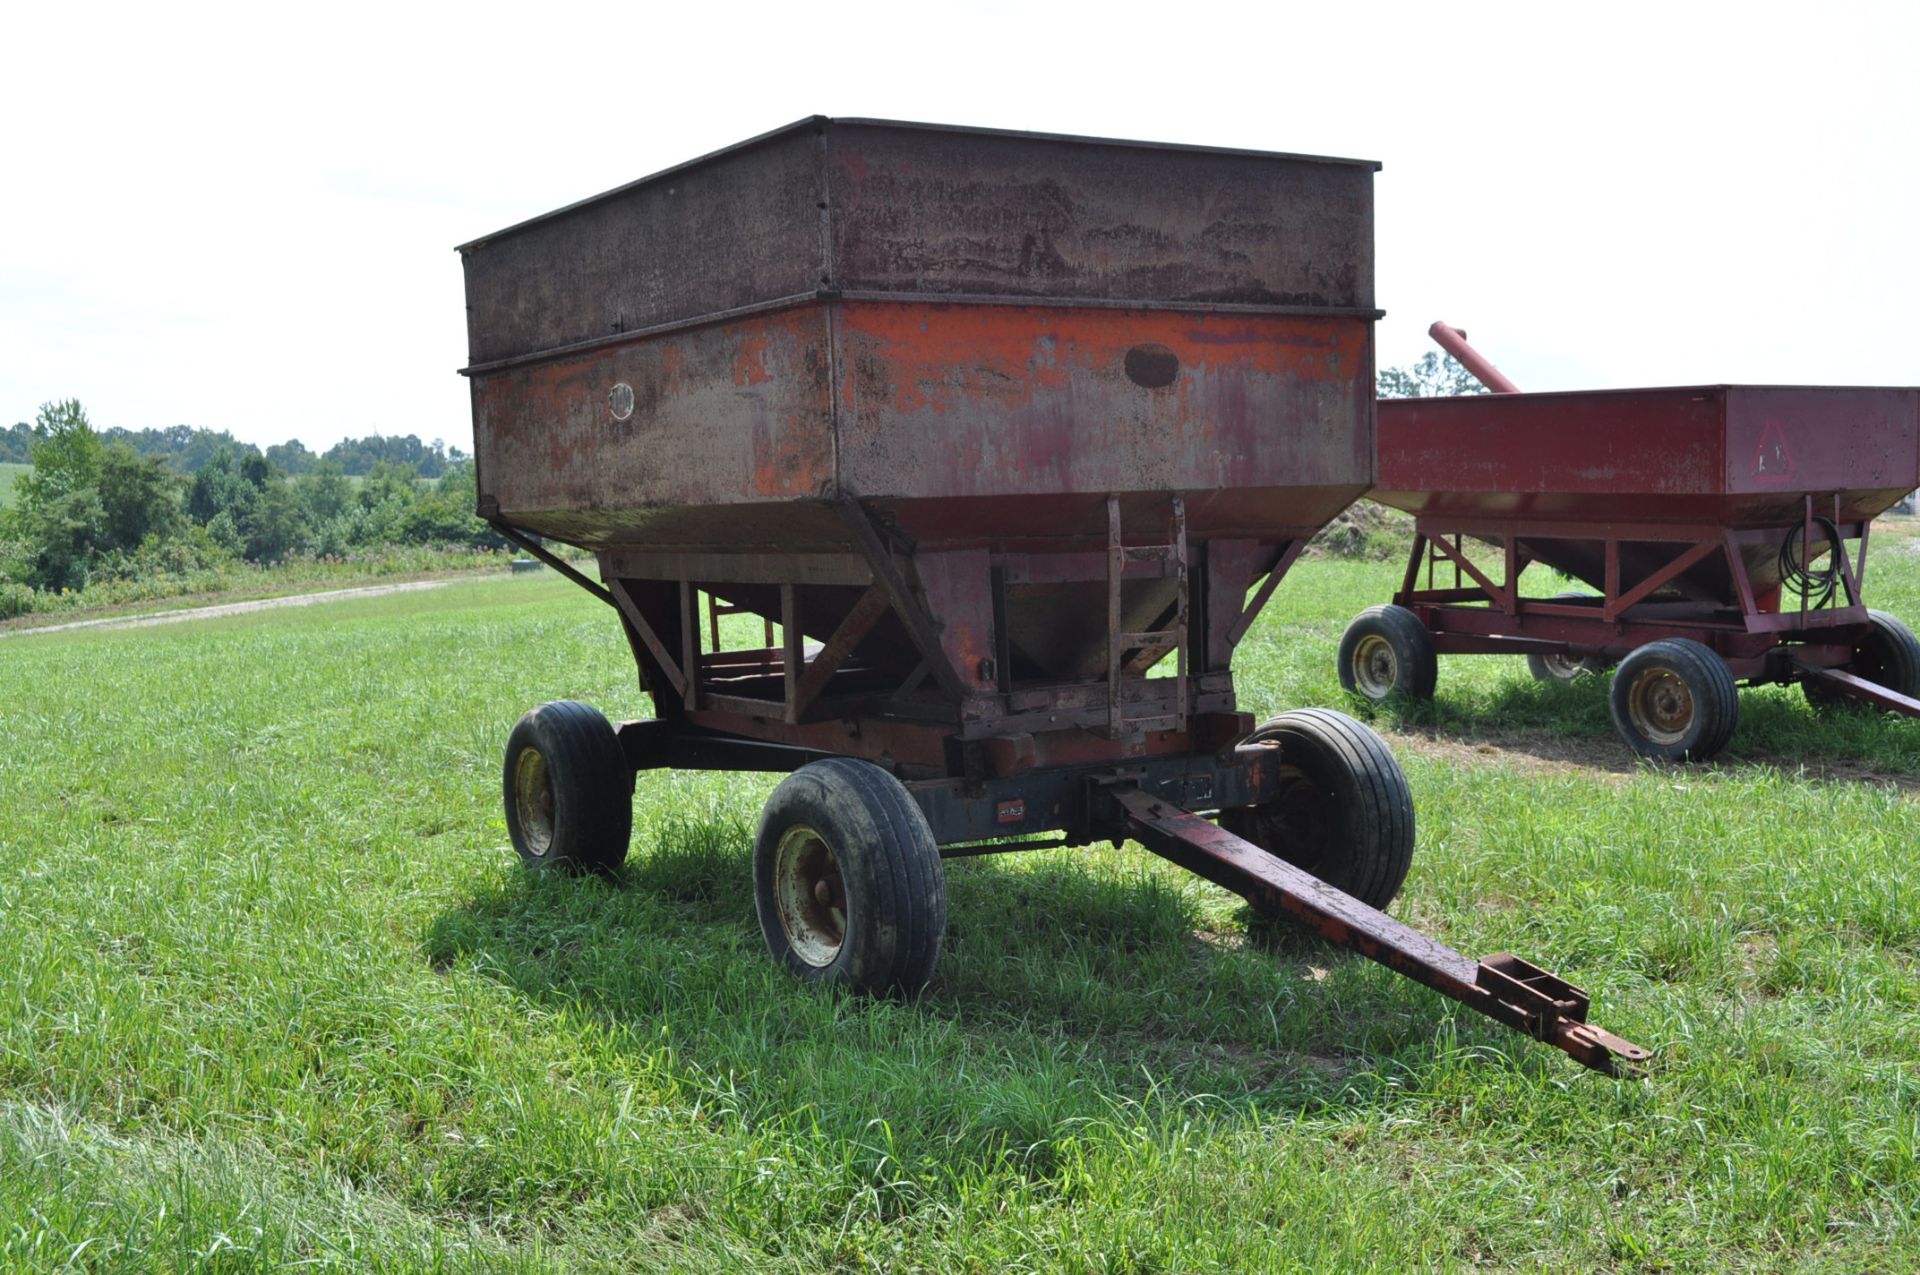 250 bu gravity wagon, Ed Johnson - Jackson, Ohio (740) 988-0813 - Image 4 of 11